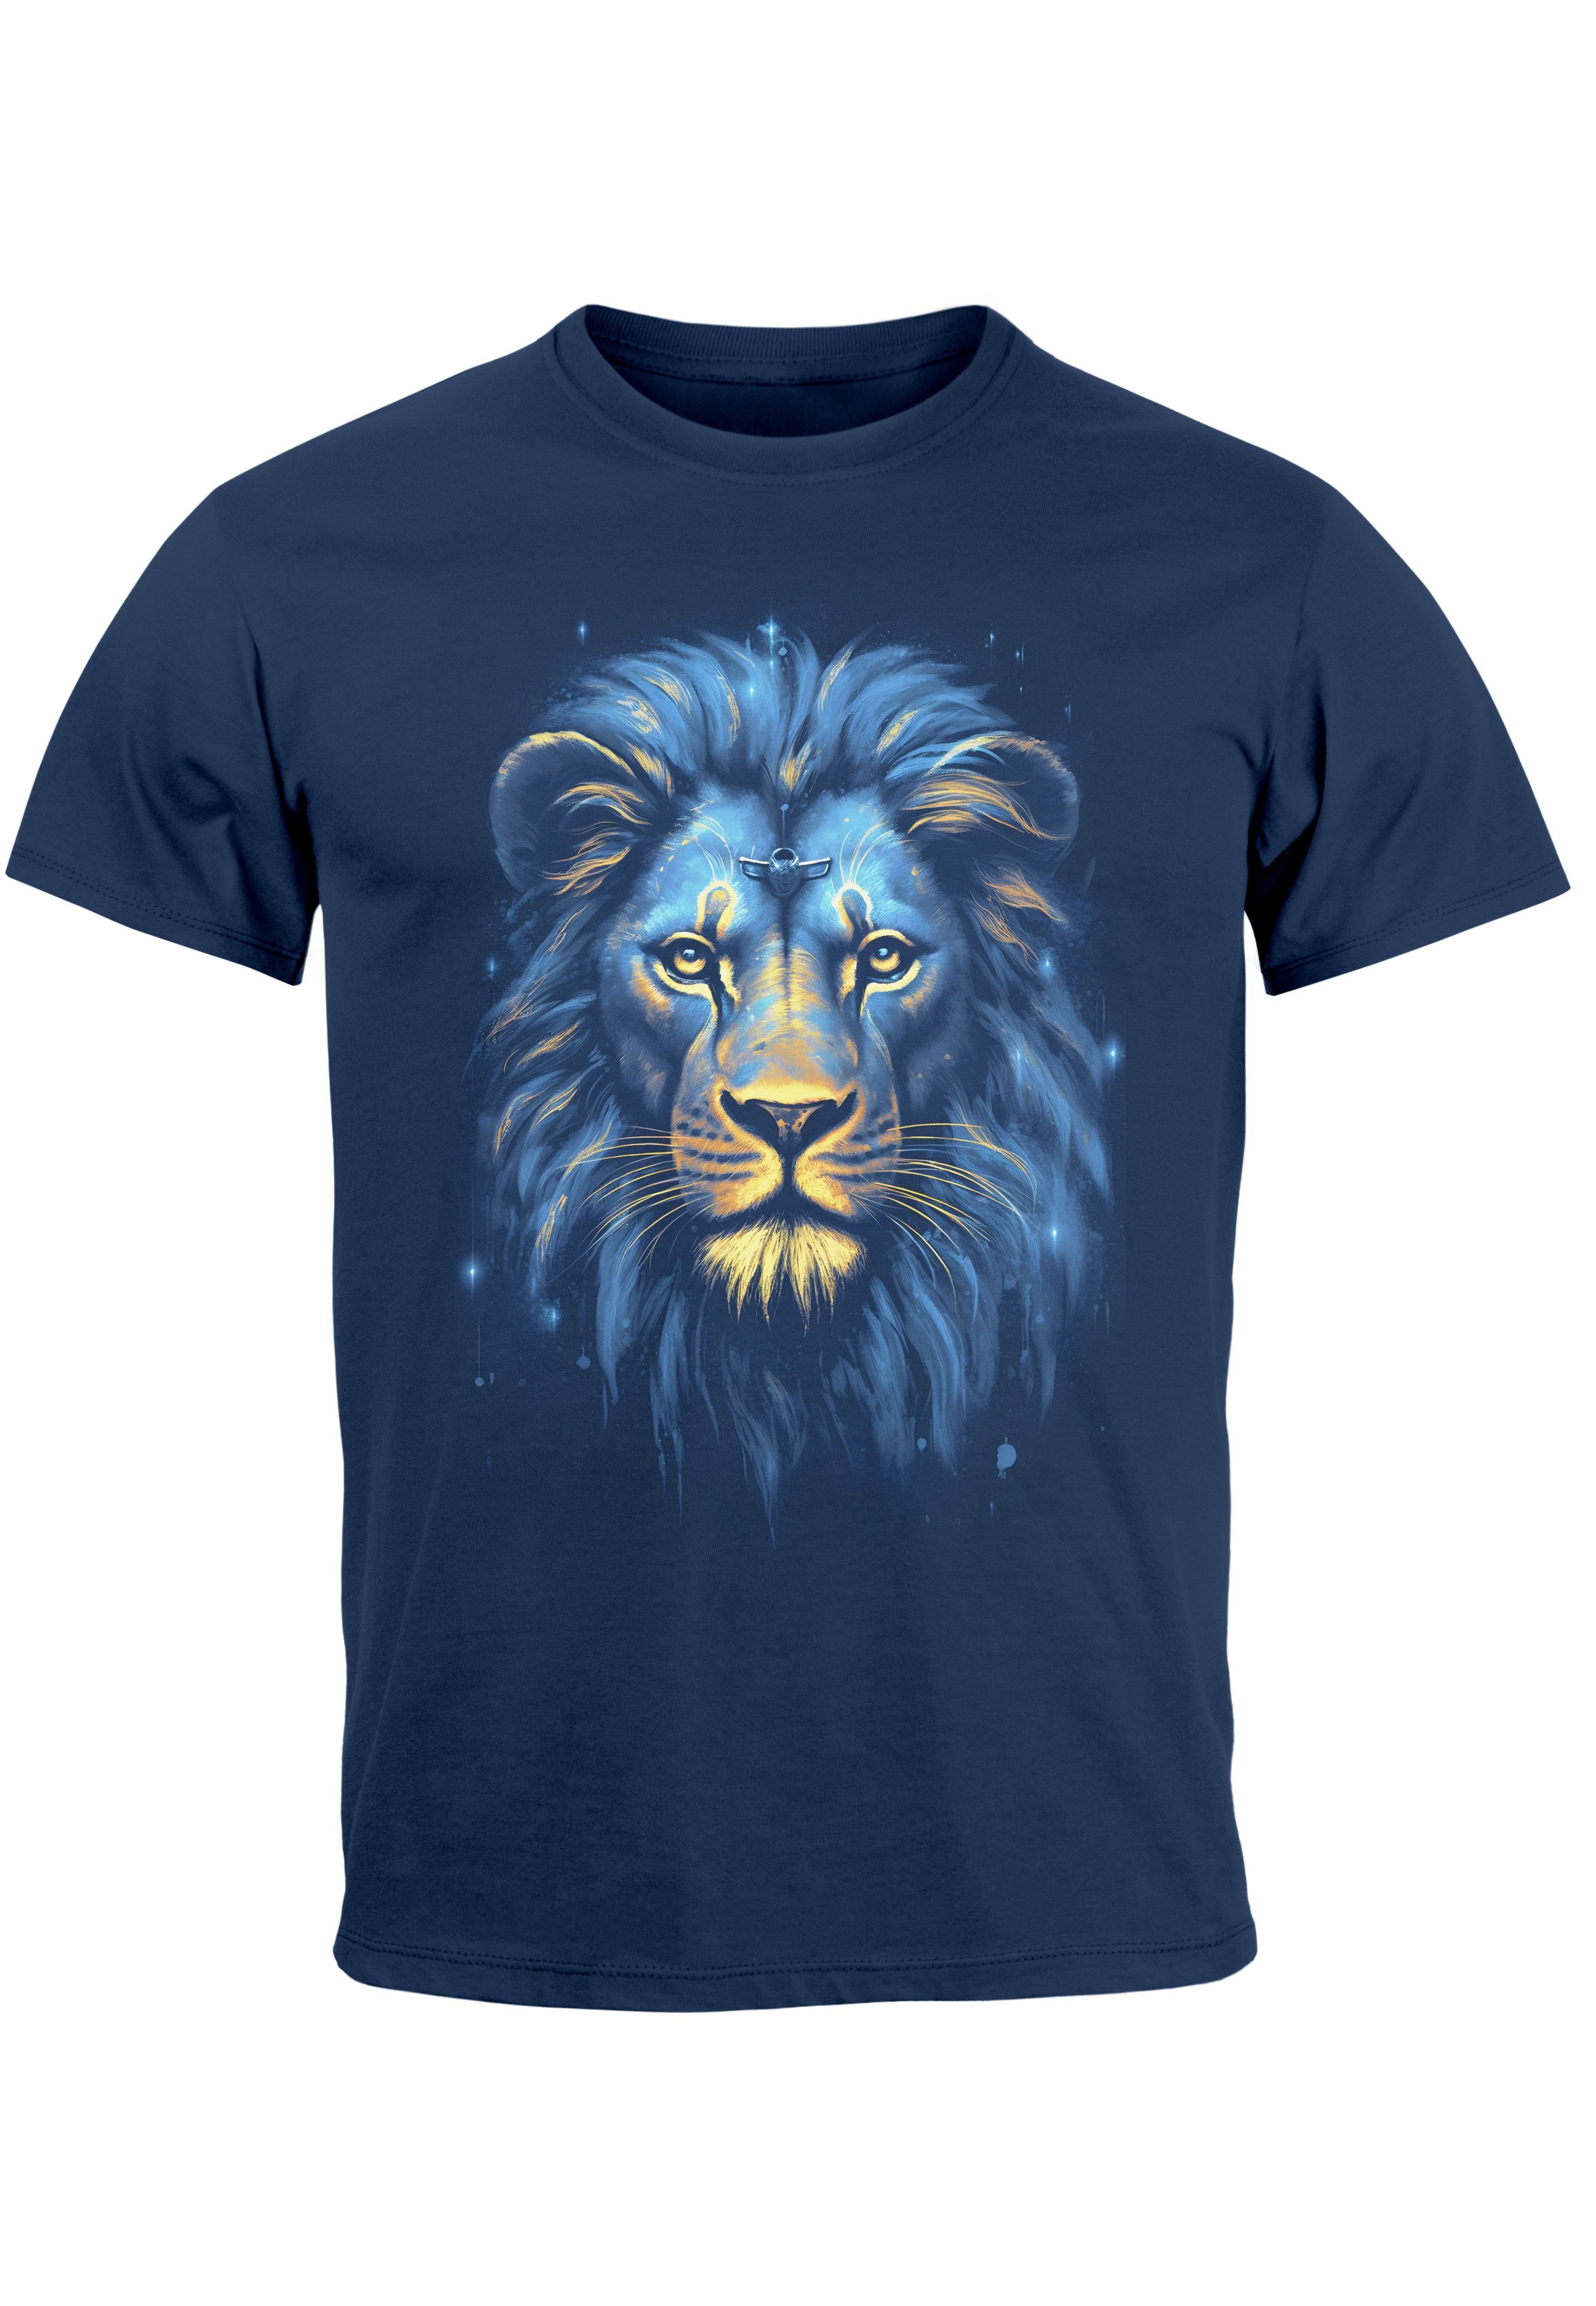 Neverless Print-Shirt Herren T-Shirt Löwe Lion Art-Print Kunst Illustration Aufdruck Printsh mit Print navy